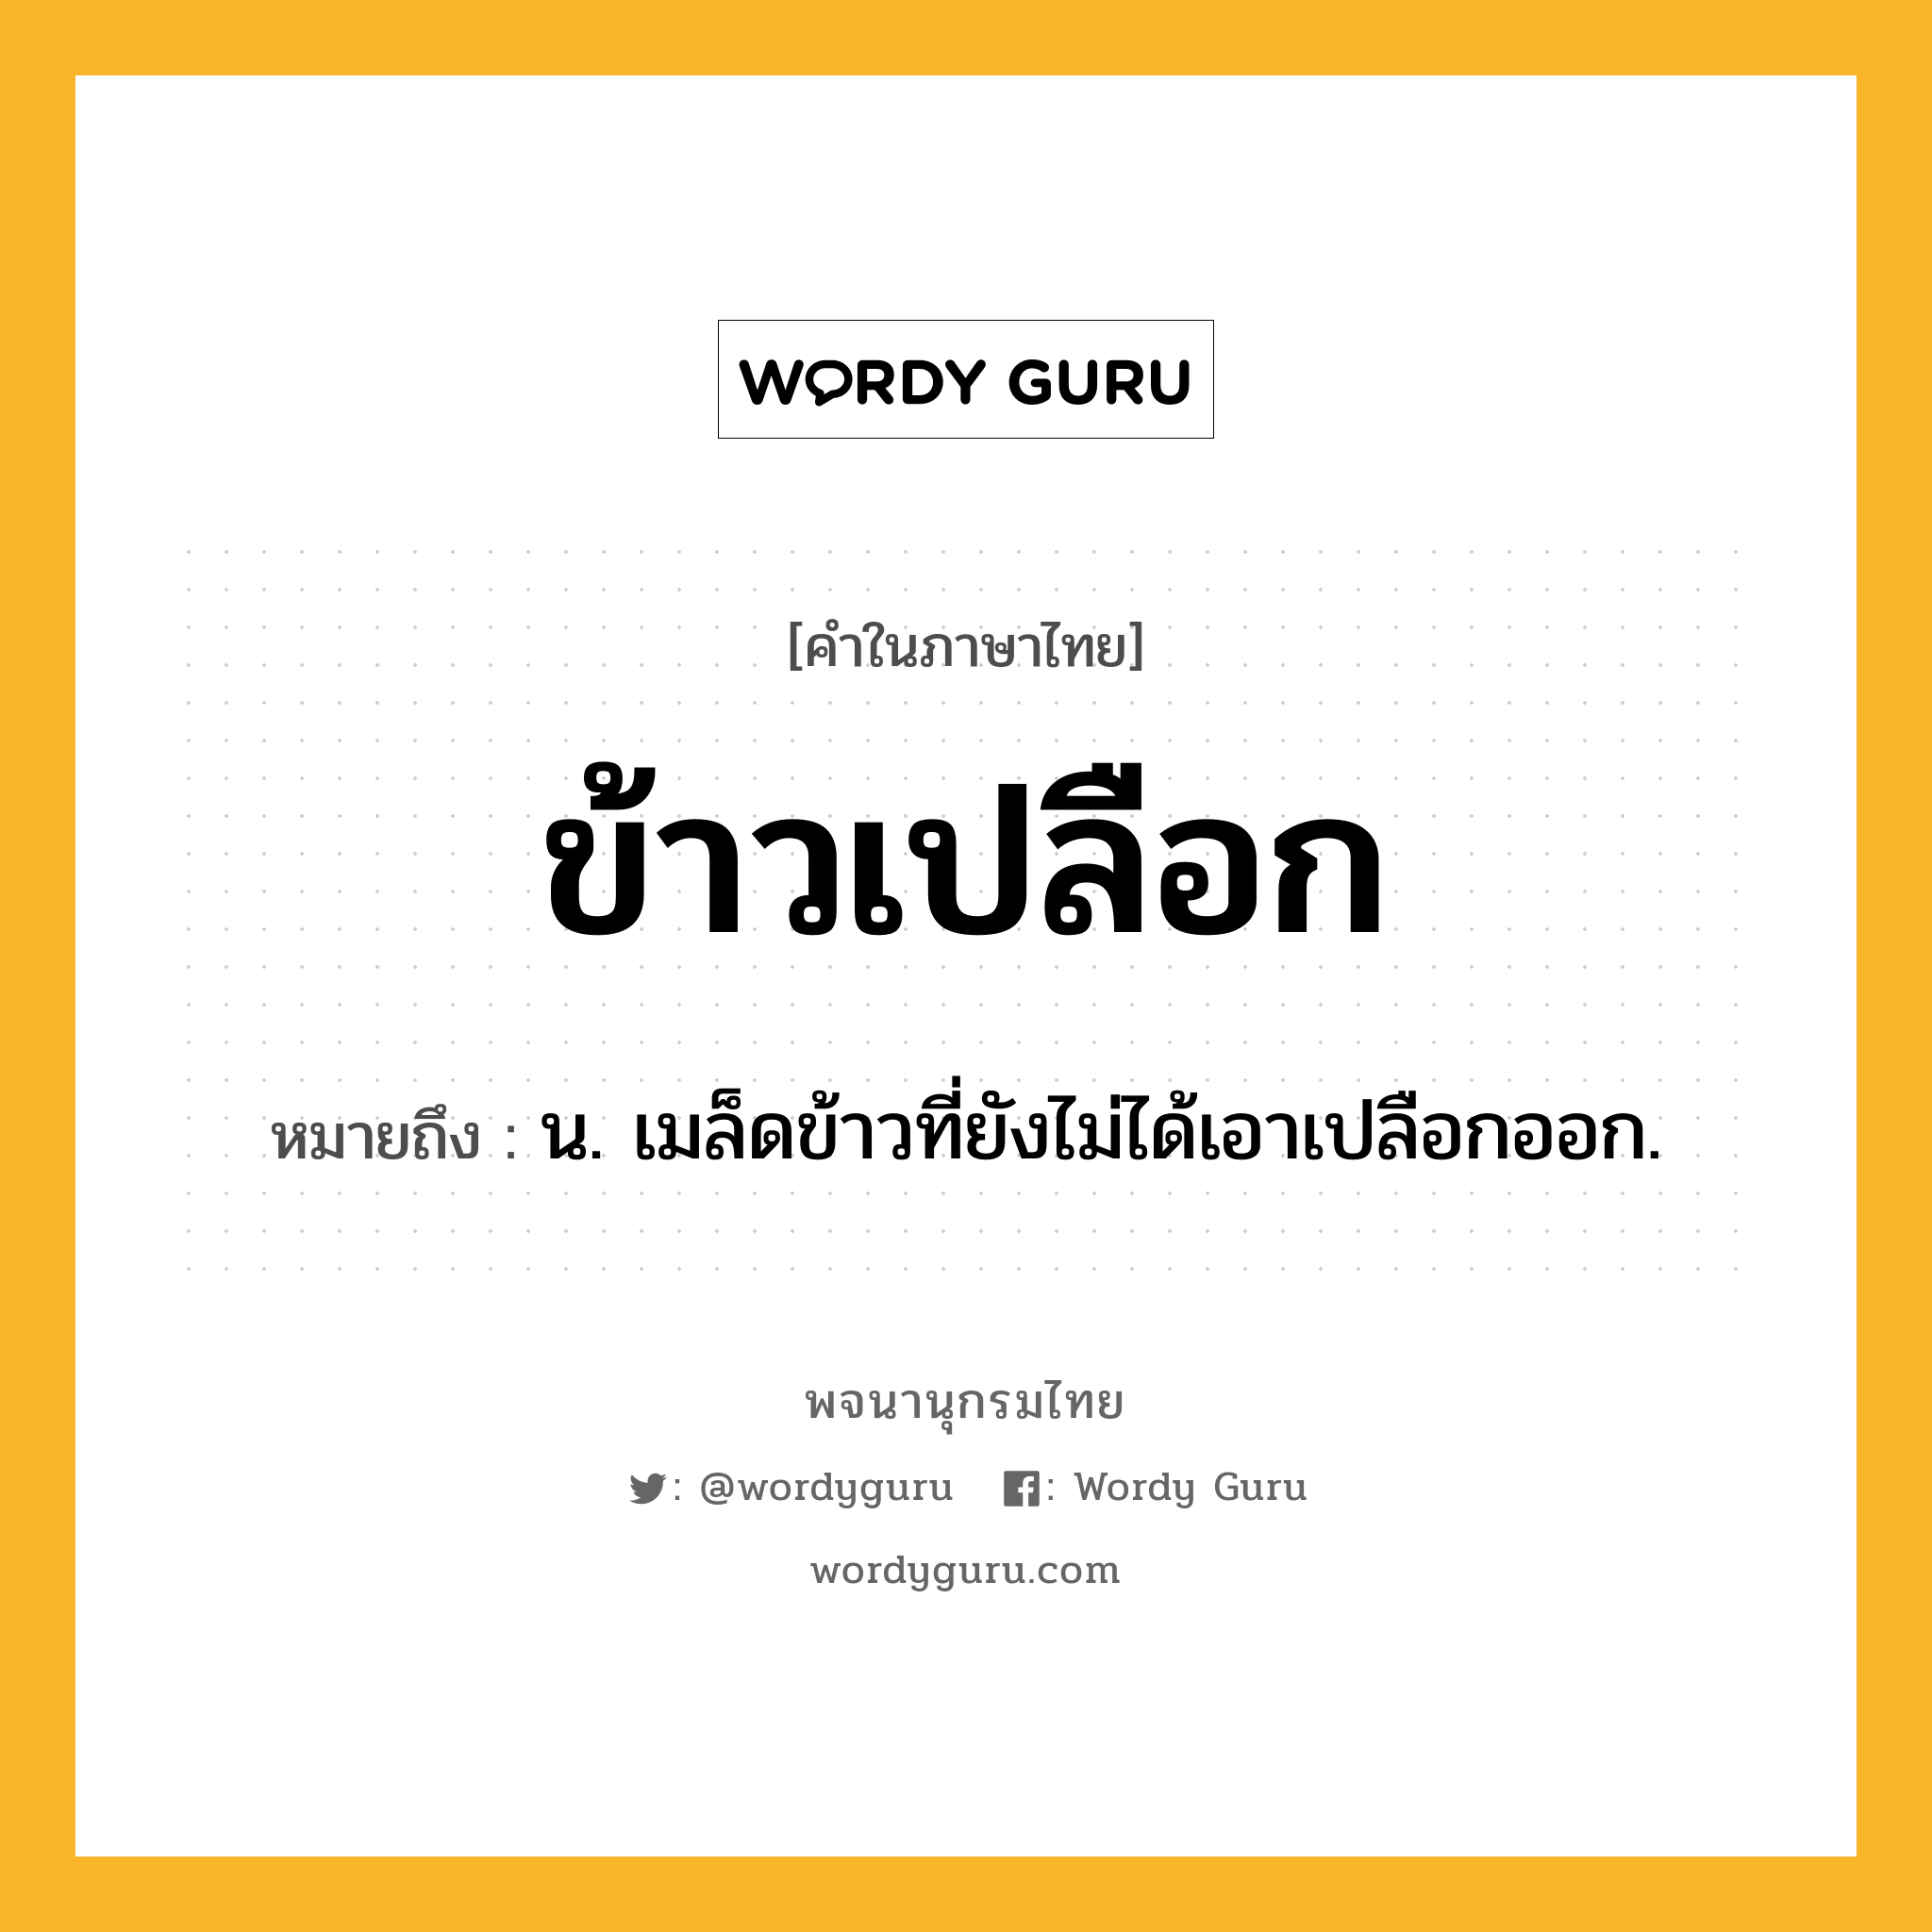 ข้าวเปลือก ความหมาย หมายถึงอะไร?, คำในภาษาไทย ข้าวเปลือก หมายถึง น. เมล็ดข้าวที่ยังไม่ได้เอาเปลือกออก.